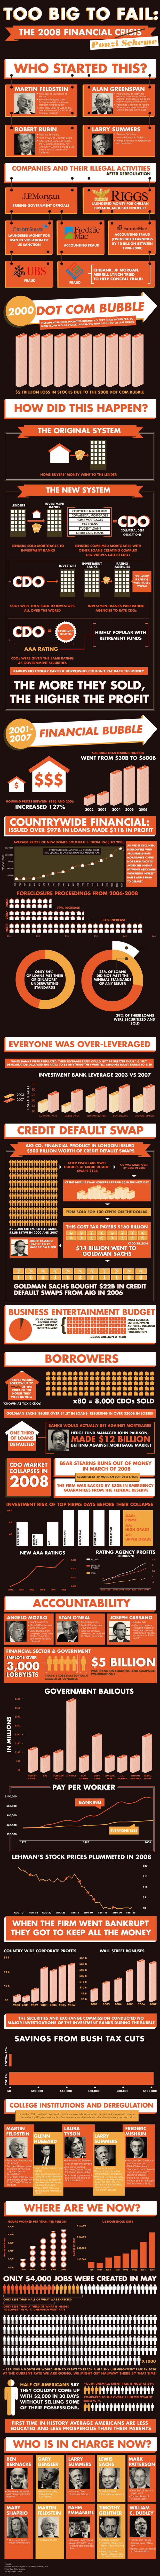 Economic Crisis Infographic